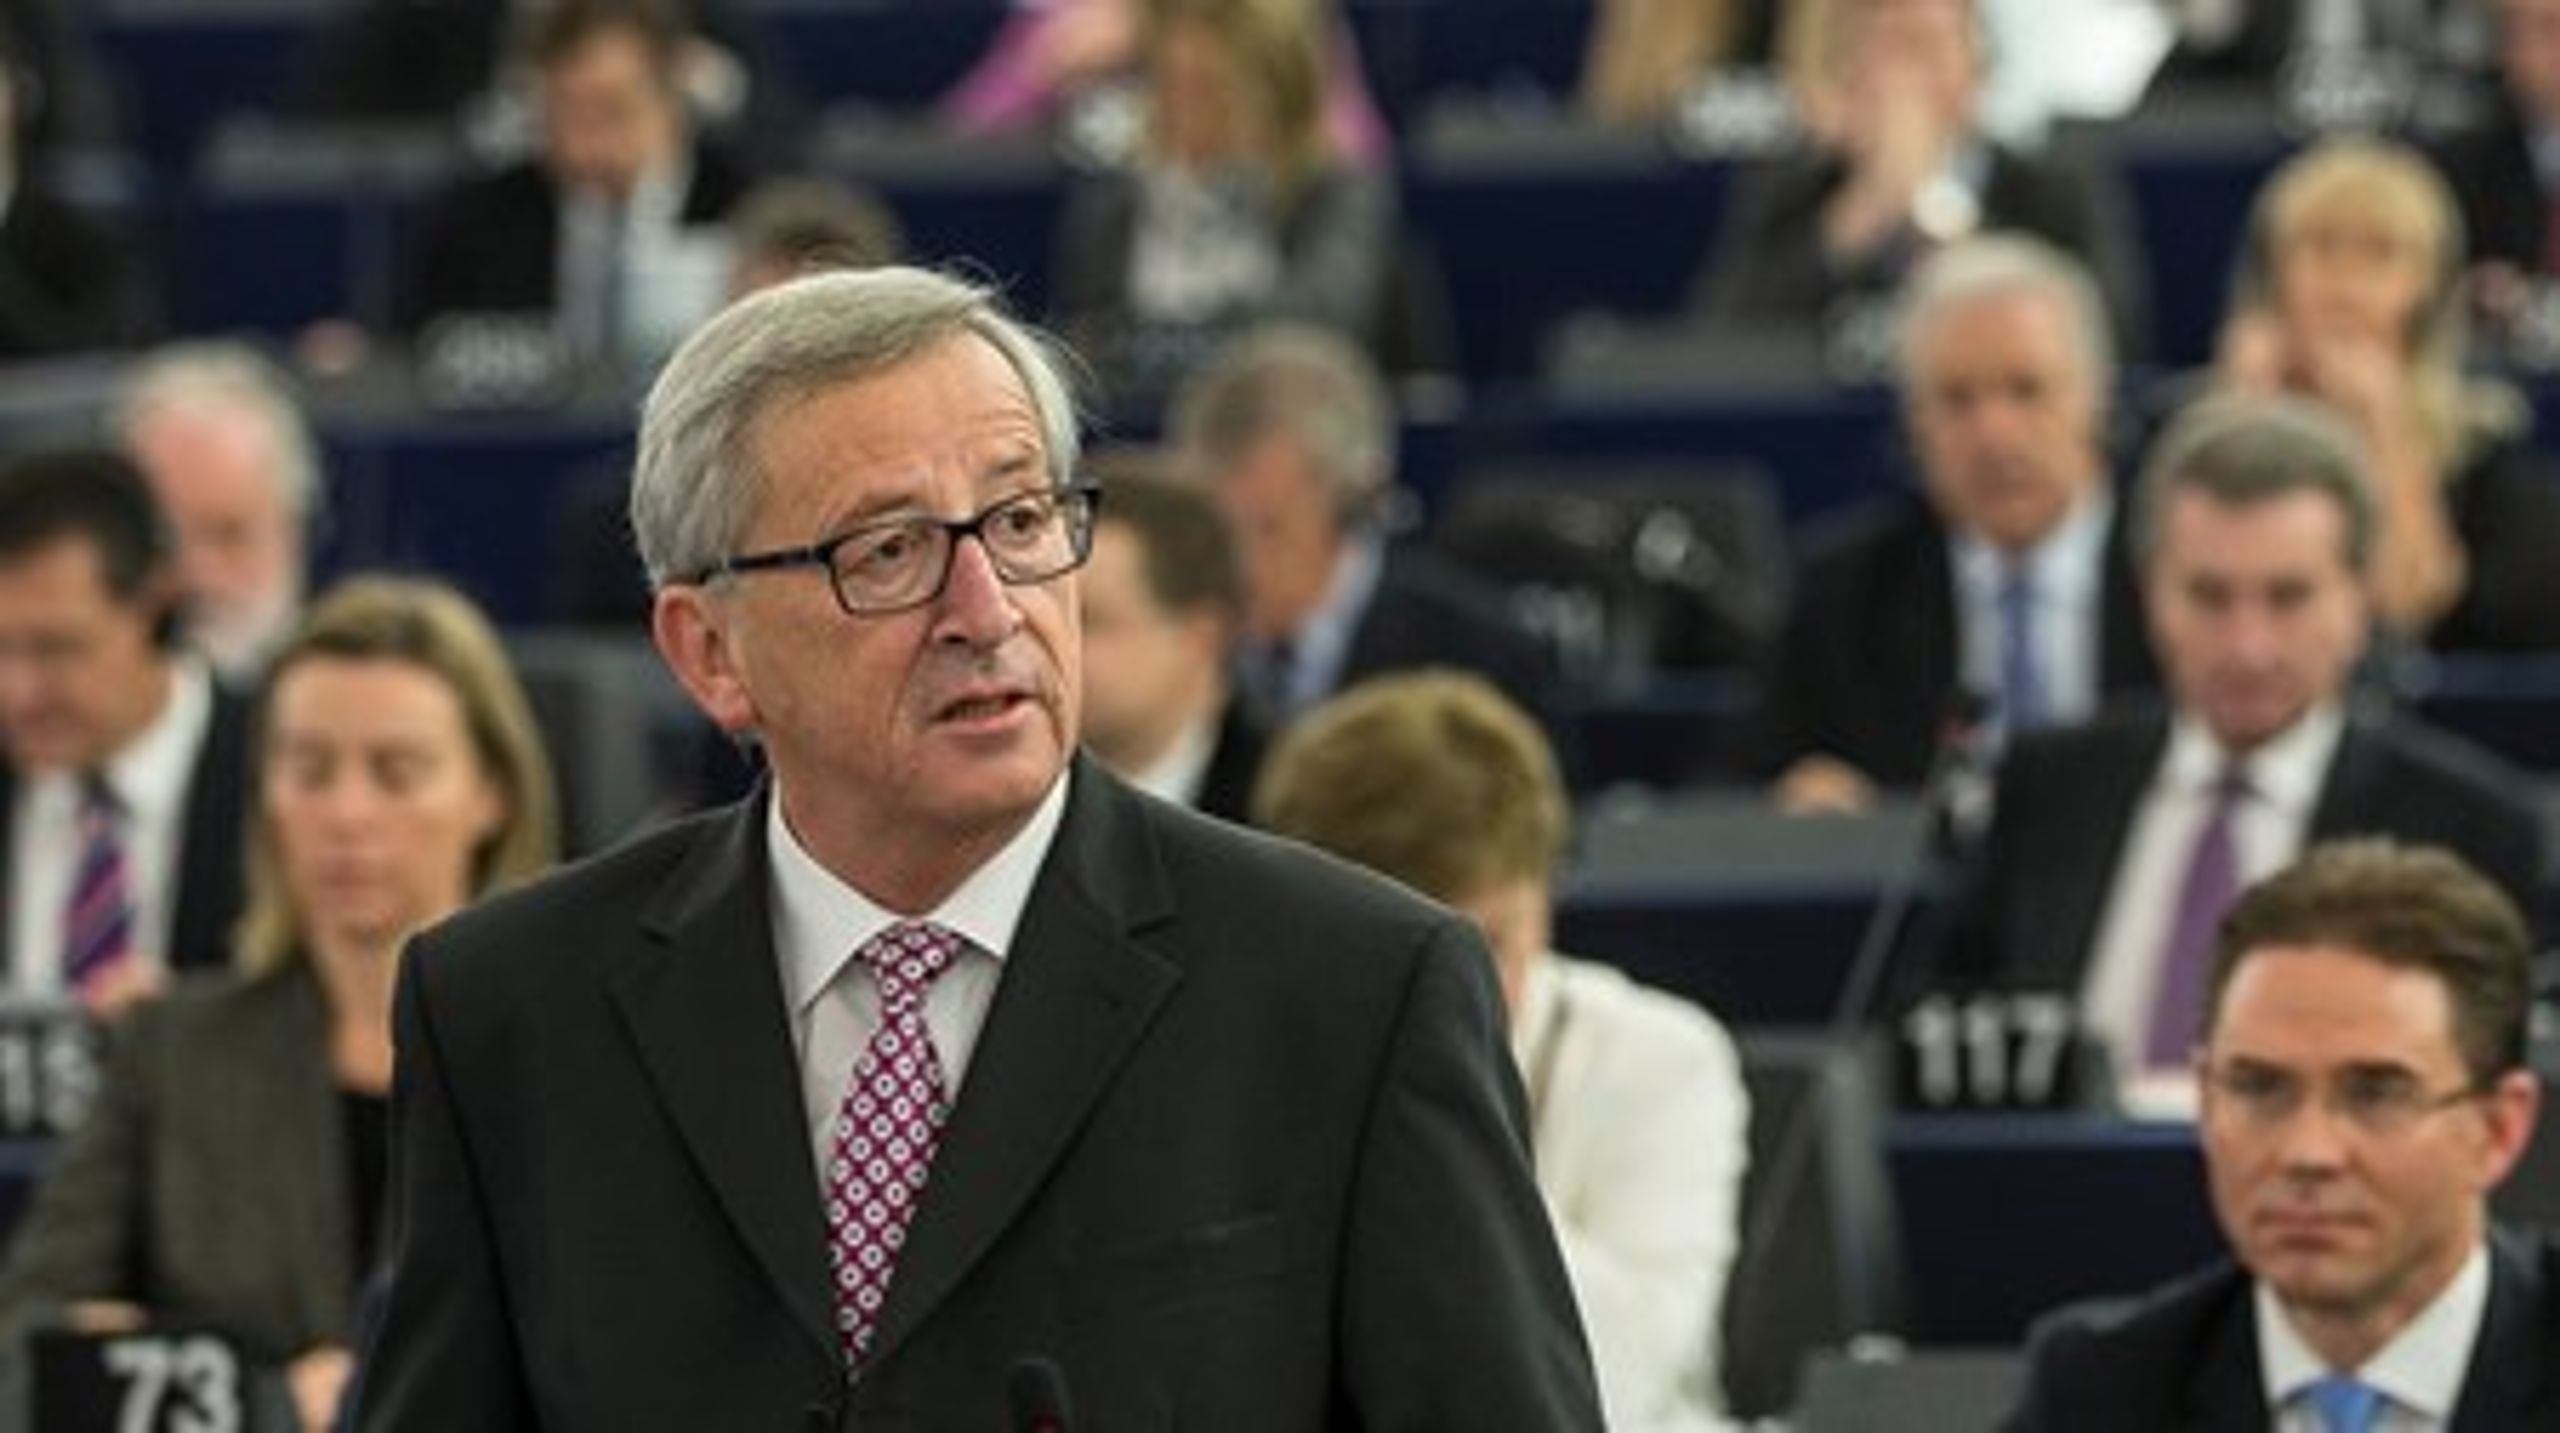 Formanden for EU-Kommissionen, Jean-Claude Juncker, vil onsdag holde den årlige&nbsp;<i>State of the European Union</i>-tale. Det sker i Europa-Parlamentet i Strasbourg.